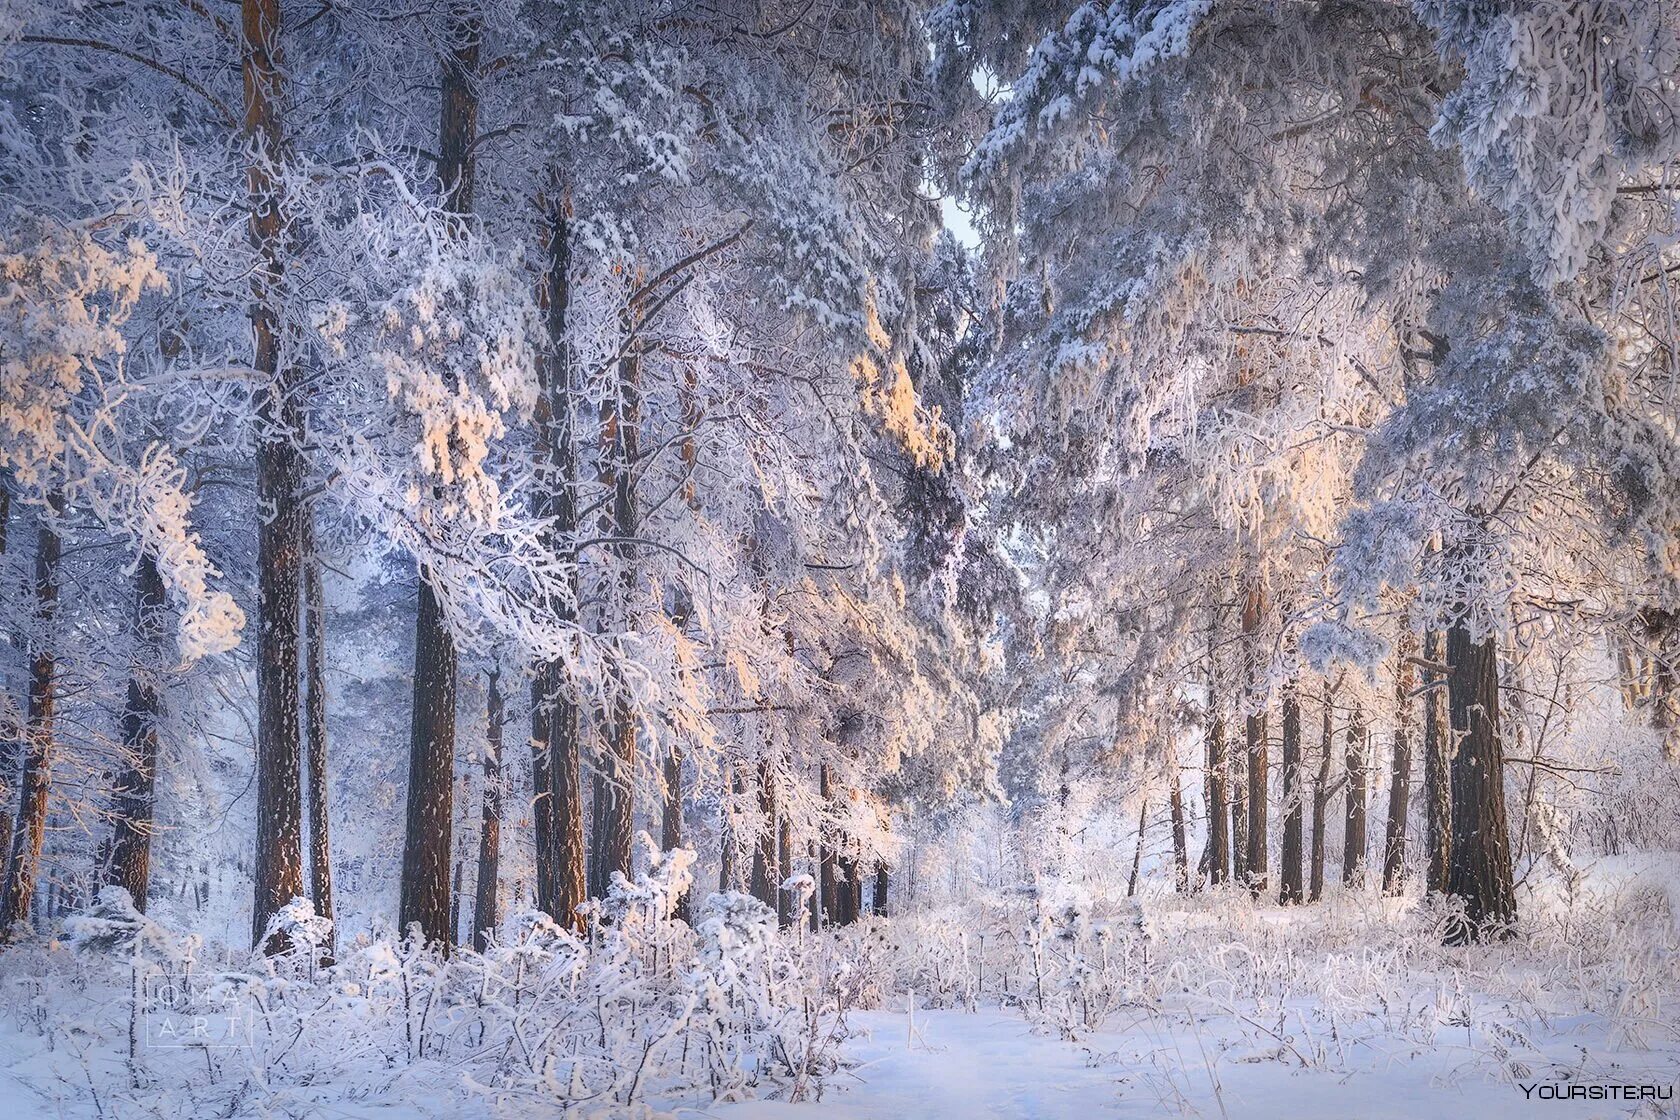 Фф и в морозном лесу я навеки. Морозный лес. Мороз и солнце лес. Декабрь солнце Мороз. Мороз и солнце в зимнем лесу.